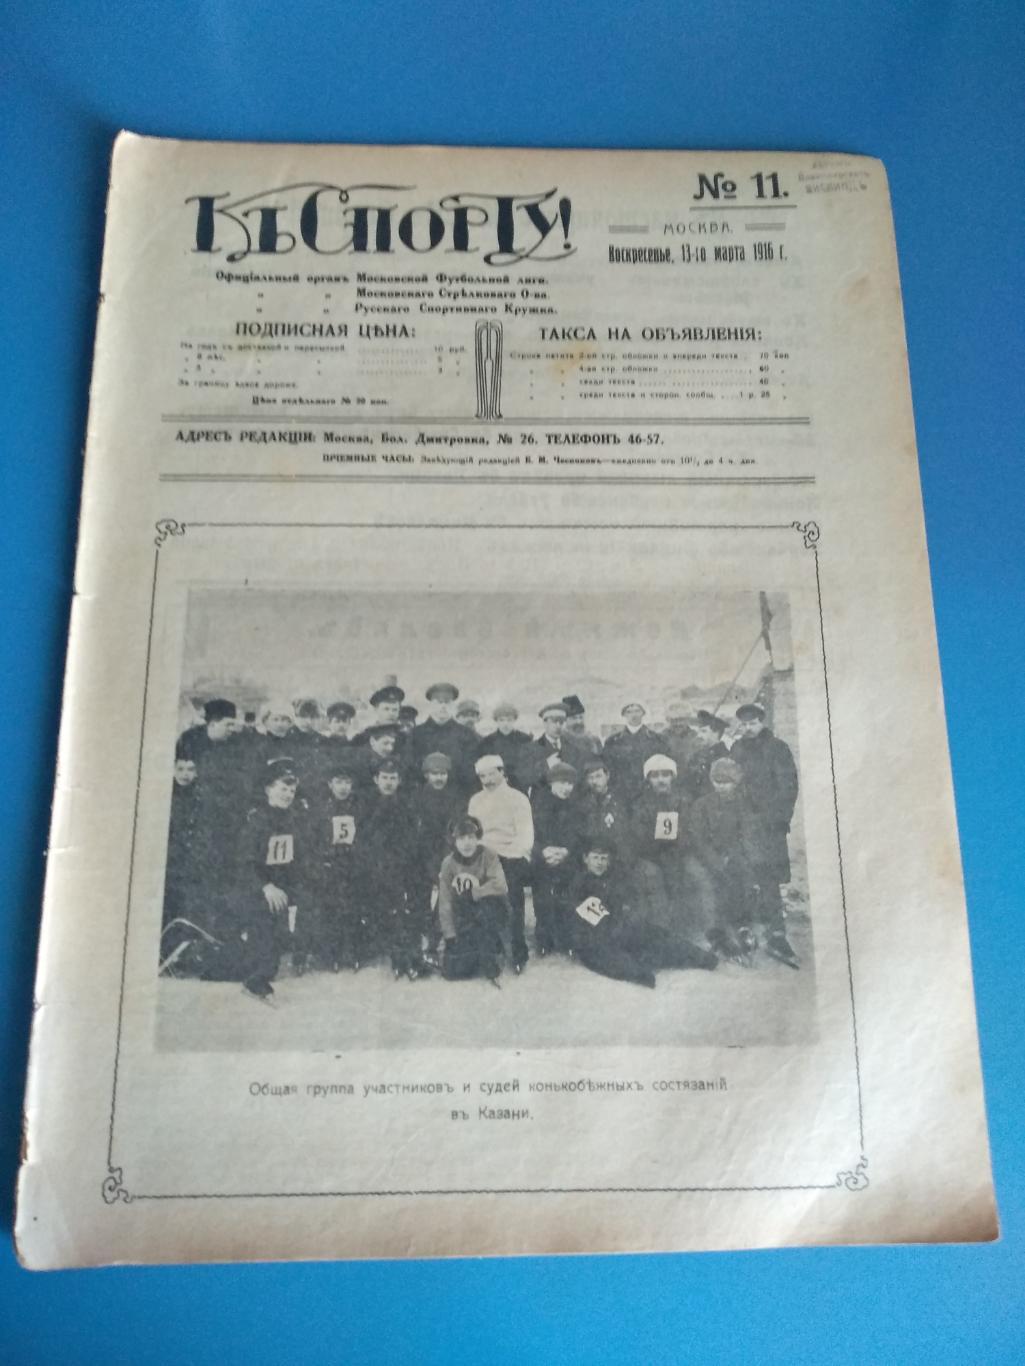 Москва 1916. Казань, Нижний Новгород, Кишинев, Одесса, Николаев